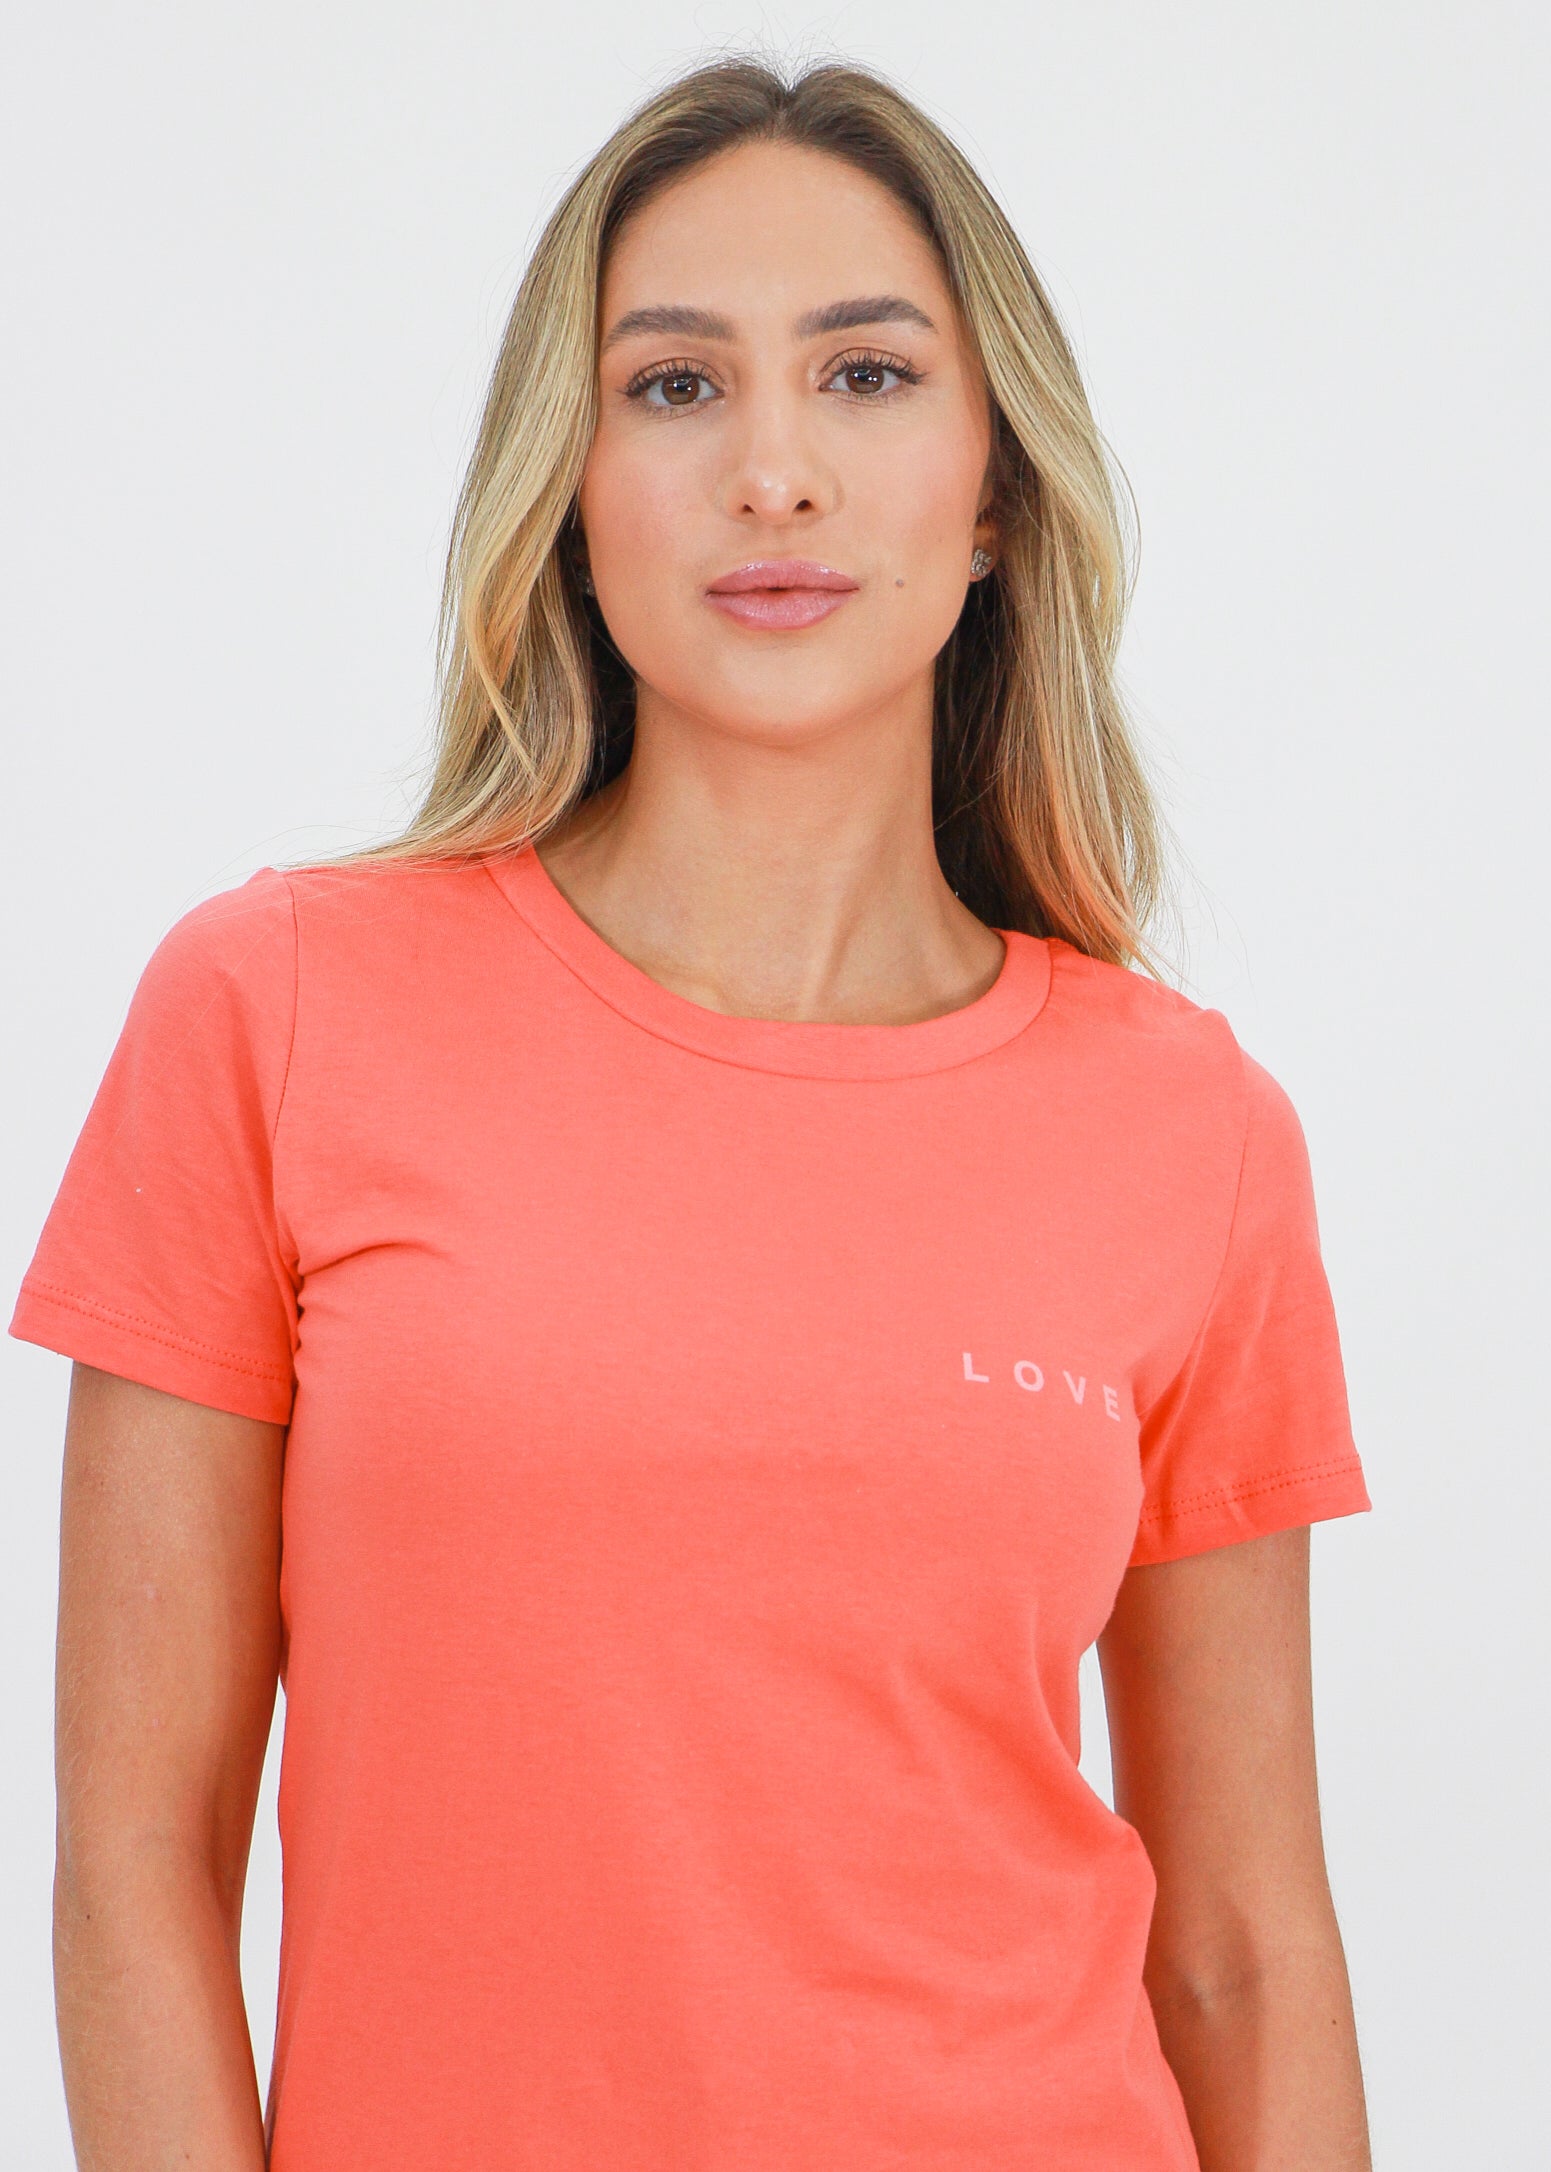 Camiseta Love - Coral